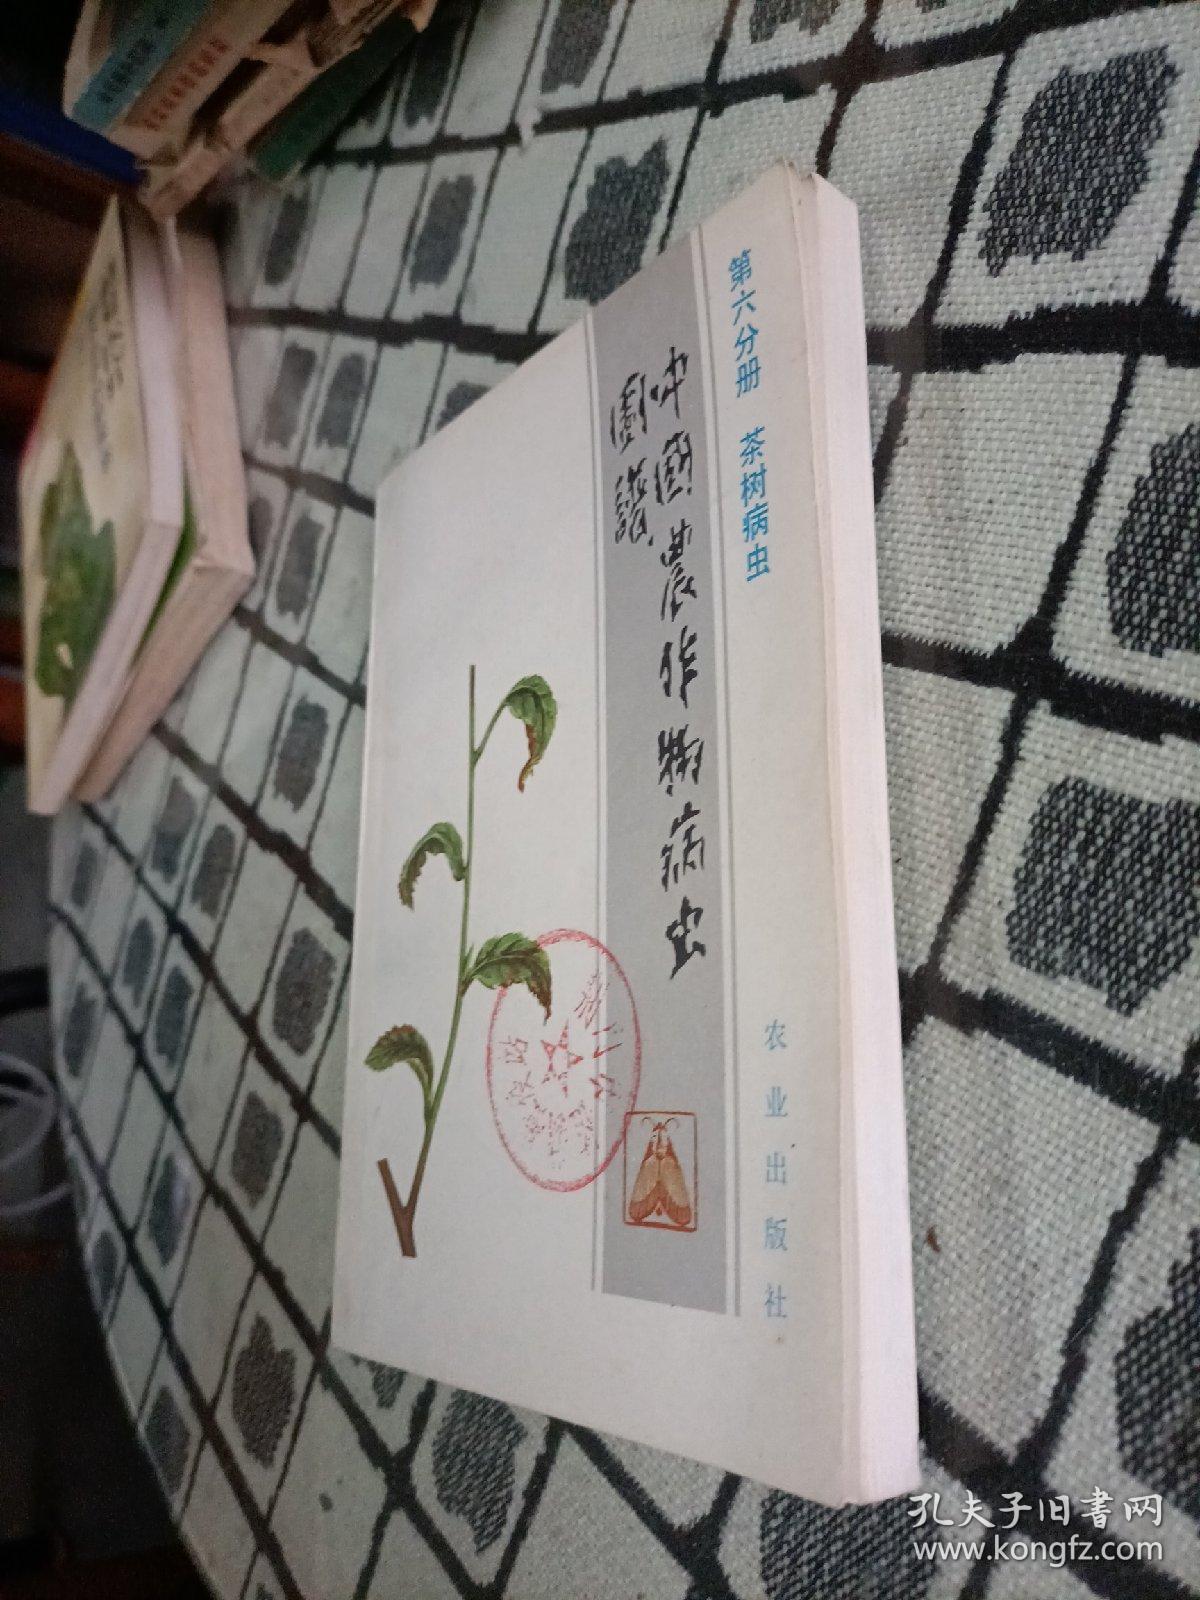 中国农作物病虫图谱.第六分册.茶树病虫